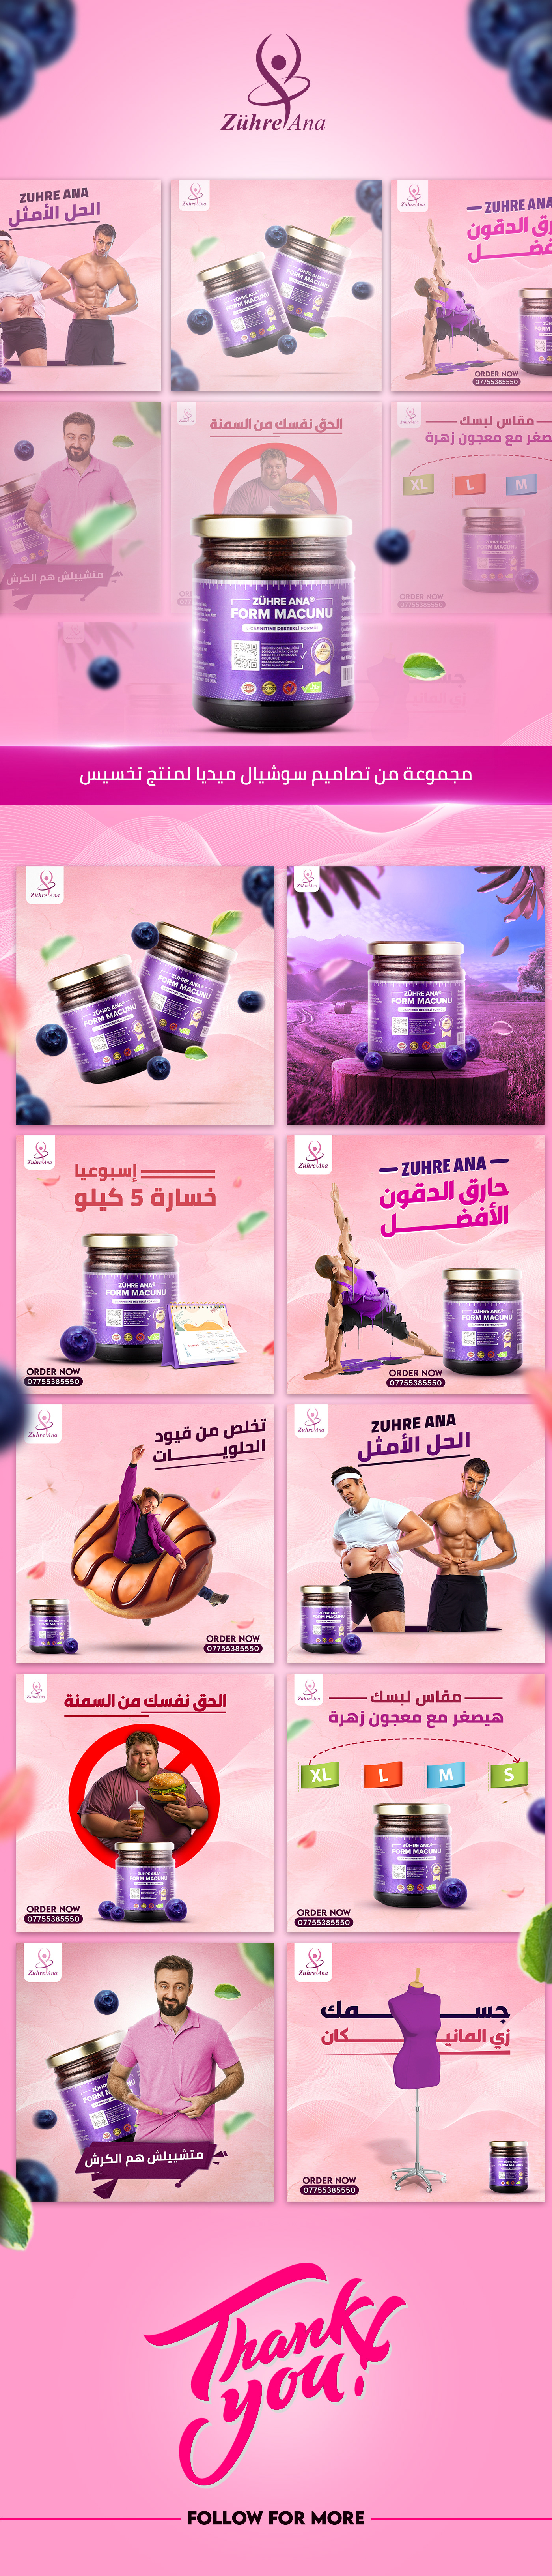 dubai emirates Saudi Arabia Advertising  Social media post design Graphic Designer clinic product design  creative